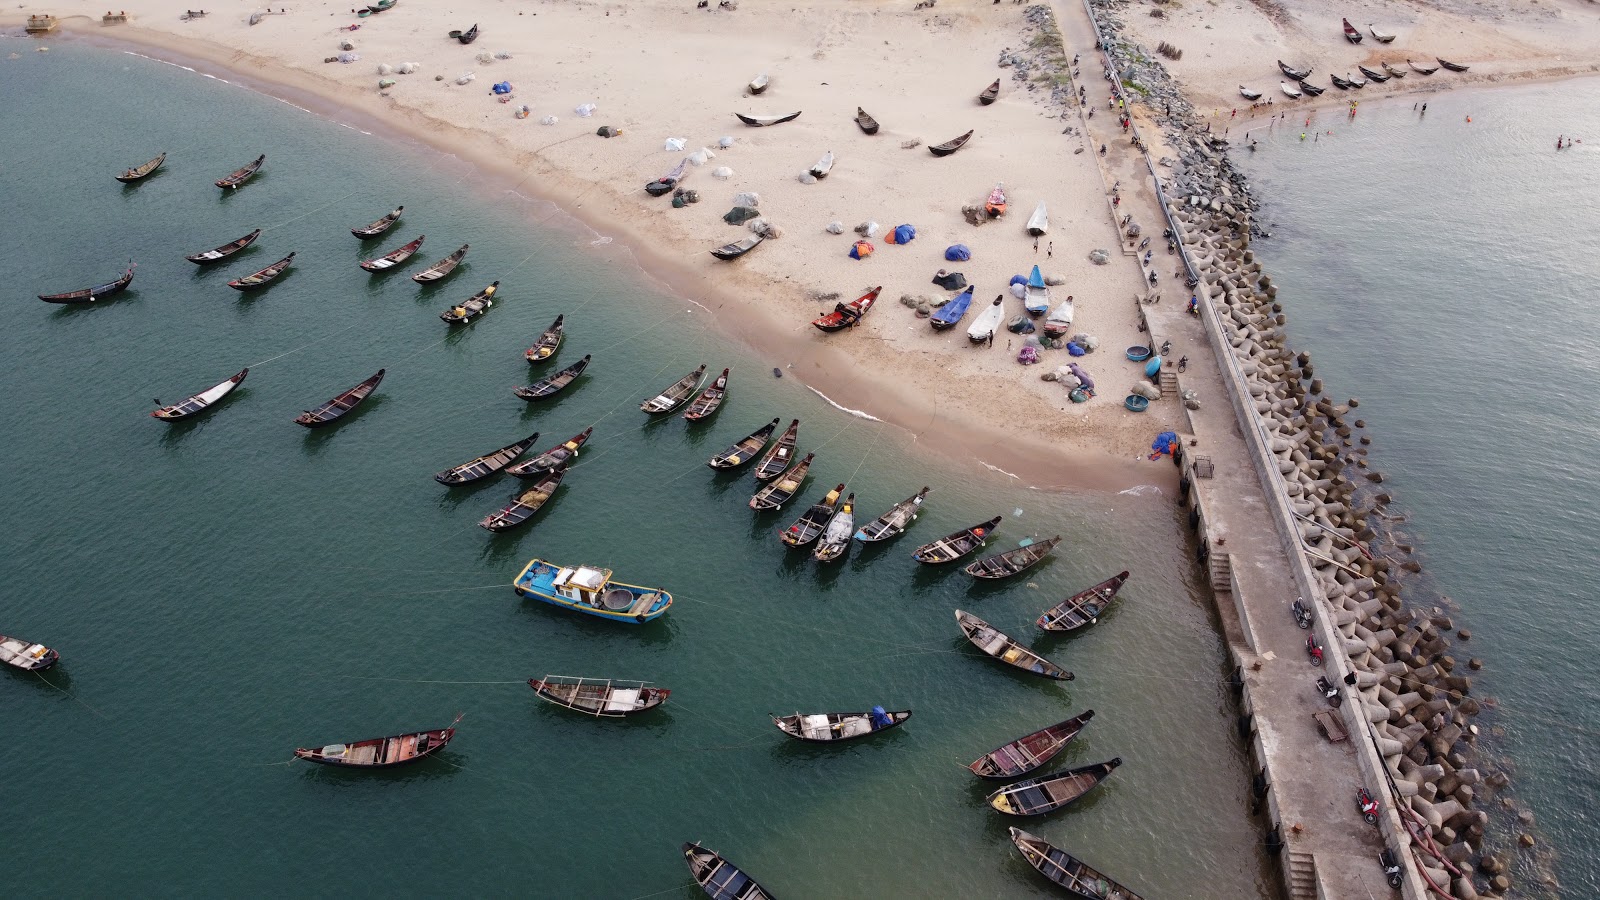 Fotografie cu Hoanh Son beach zonele de facilități